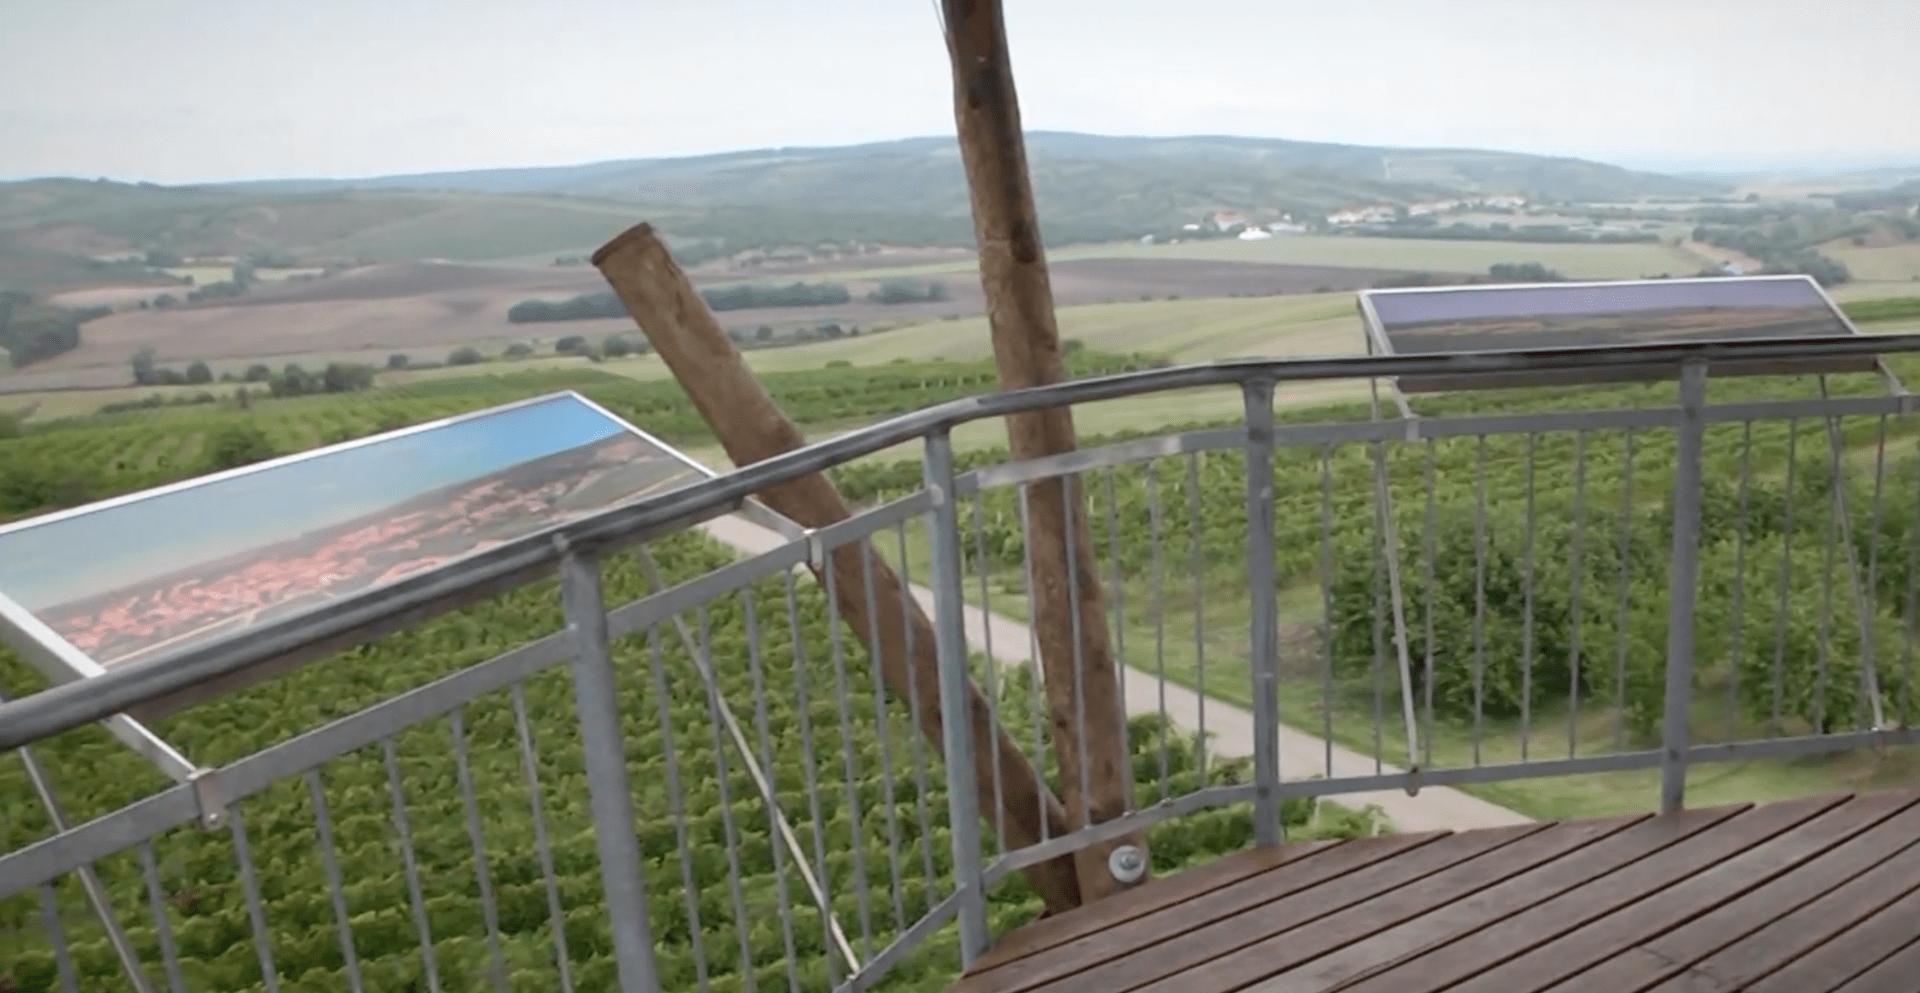 Výhled na vinice ve Velkých Pavlovicích, oblíbený pohled nejen vinařů.